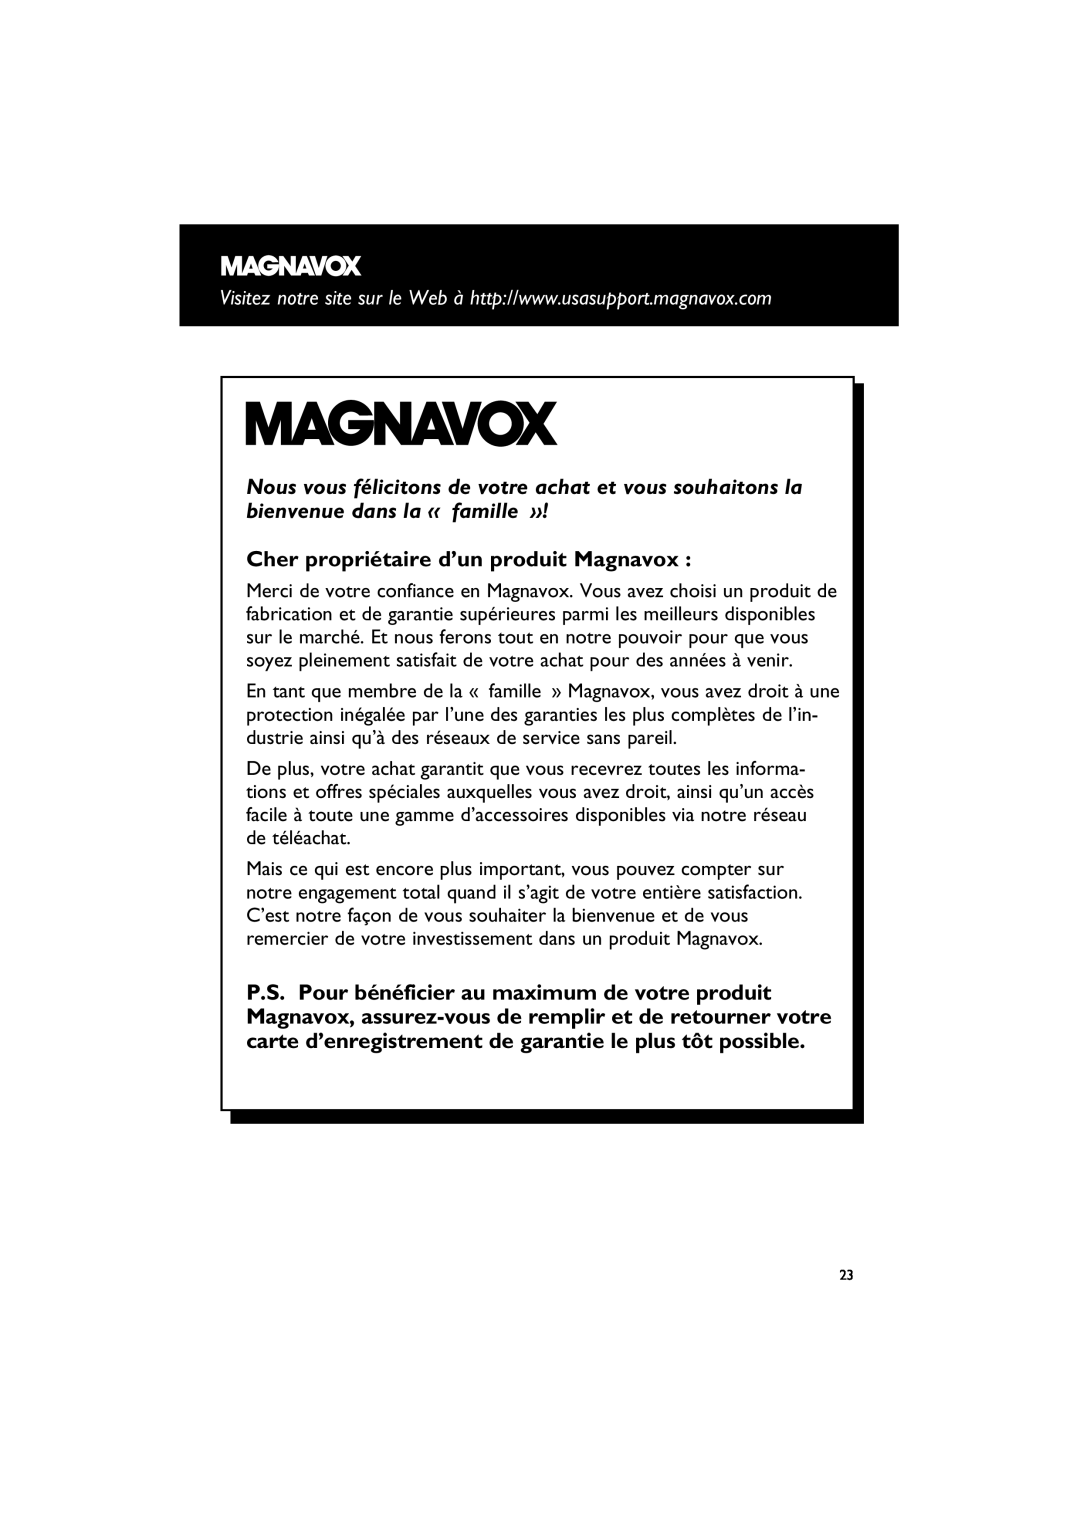 Magnavox MAS85 owner manual Cher propriétaire d’un produit Magnavox 